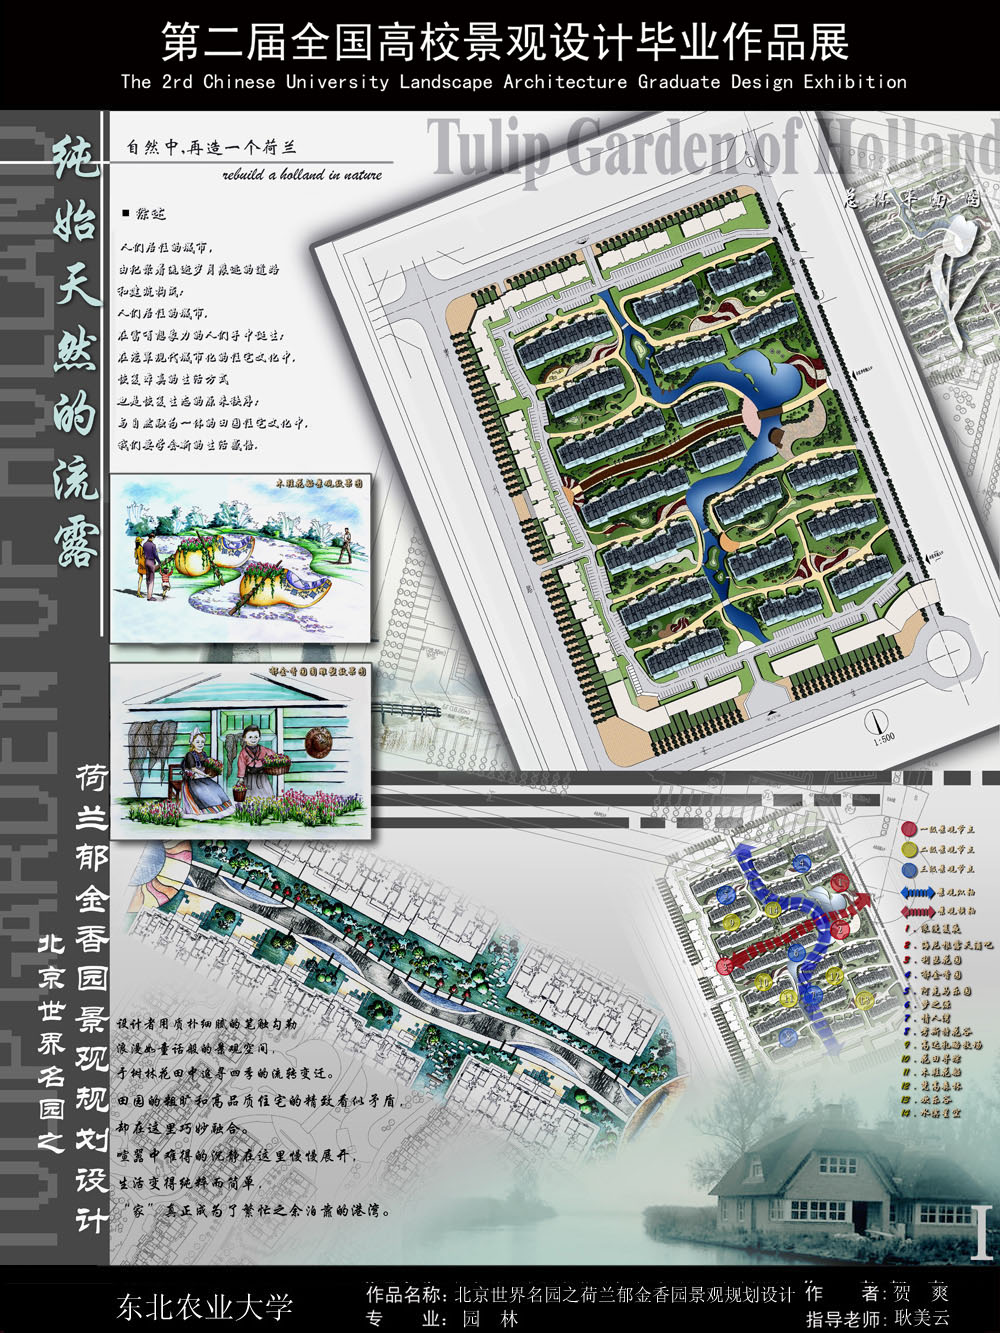 北京世界名园之荷兰郁金香园景观规划设计-1